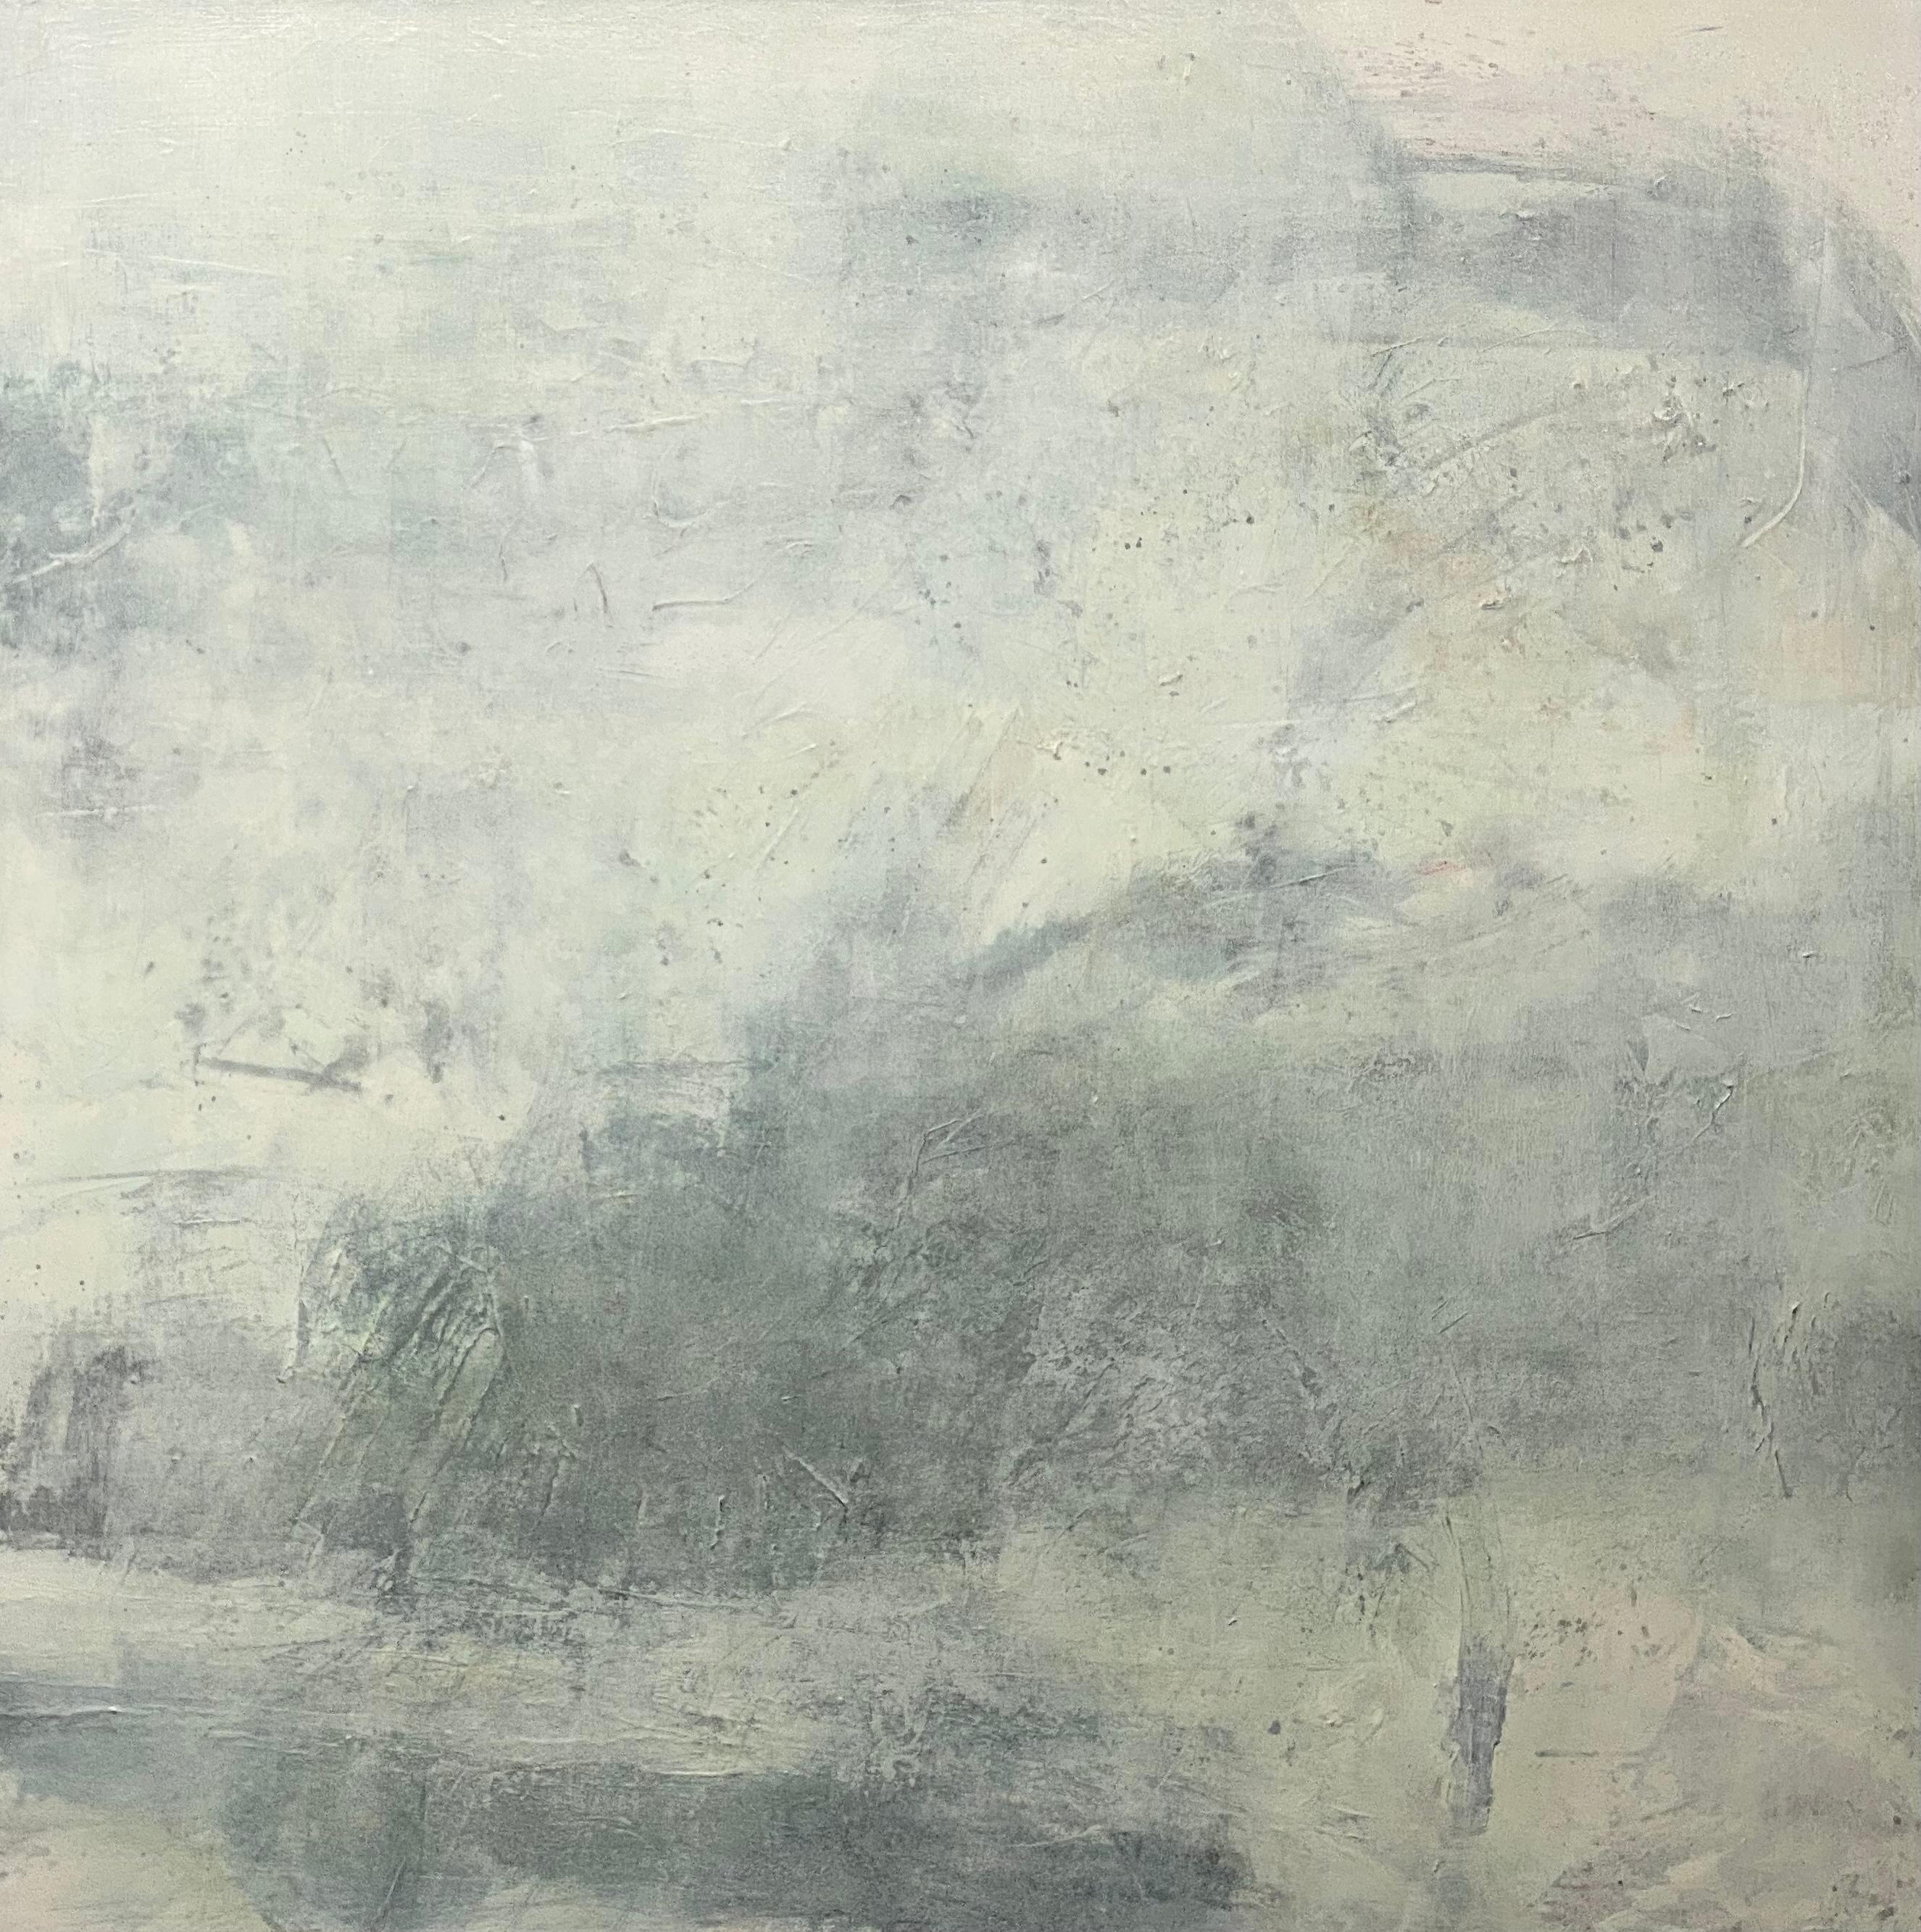 Juanita Bellavance  Landscape Painting – Es war ein nebliges Tag, zeitgenössische Landschaft, Meeresschaum, ätherische abstrakte Malerei  